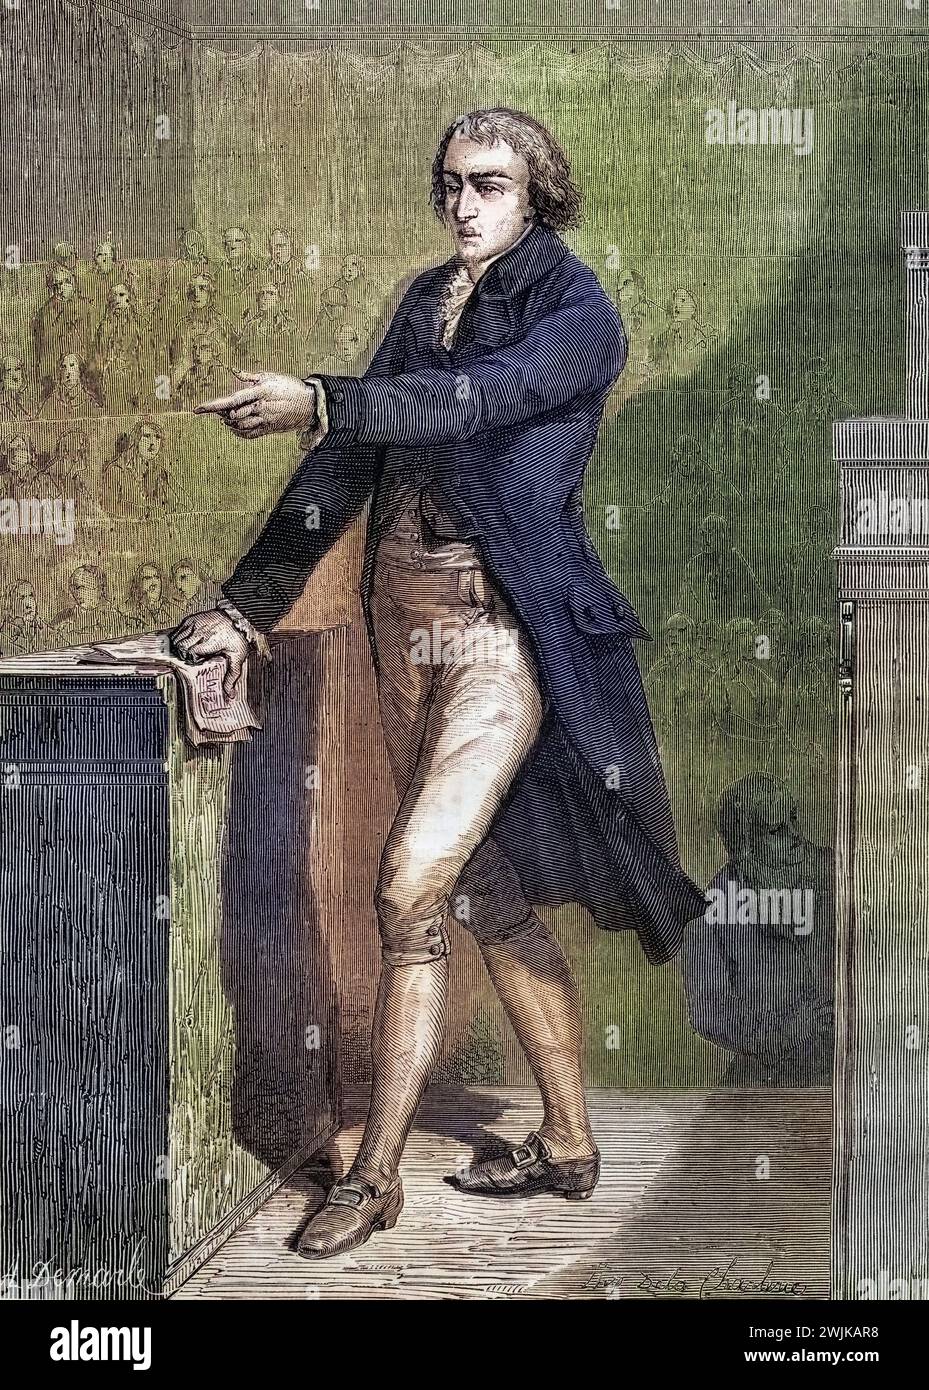 Jean-Baptiste Louvet, genannt Louvet de Couvray, (geb. 12. Juni 1760 à Paris ; est. 25. Août 1797 à Paris) War ein Politiker während der Französischen Revolution, Historisch, digital restaurierte Reproduktion von einer Vorlage aus dem 19. Jahrhundert, date du dossier non précisée Banque D'Images